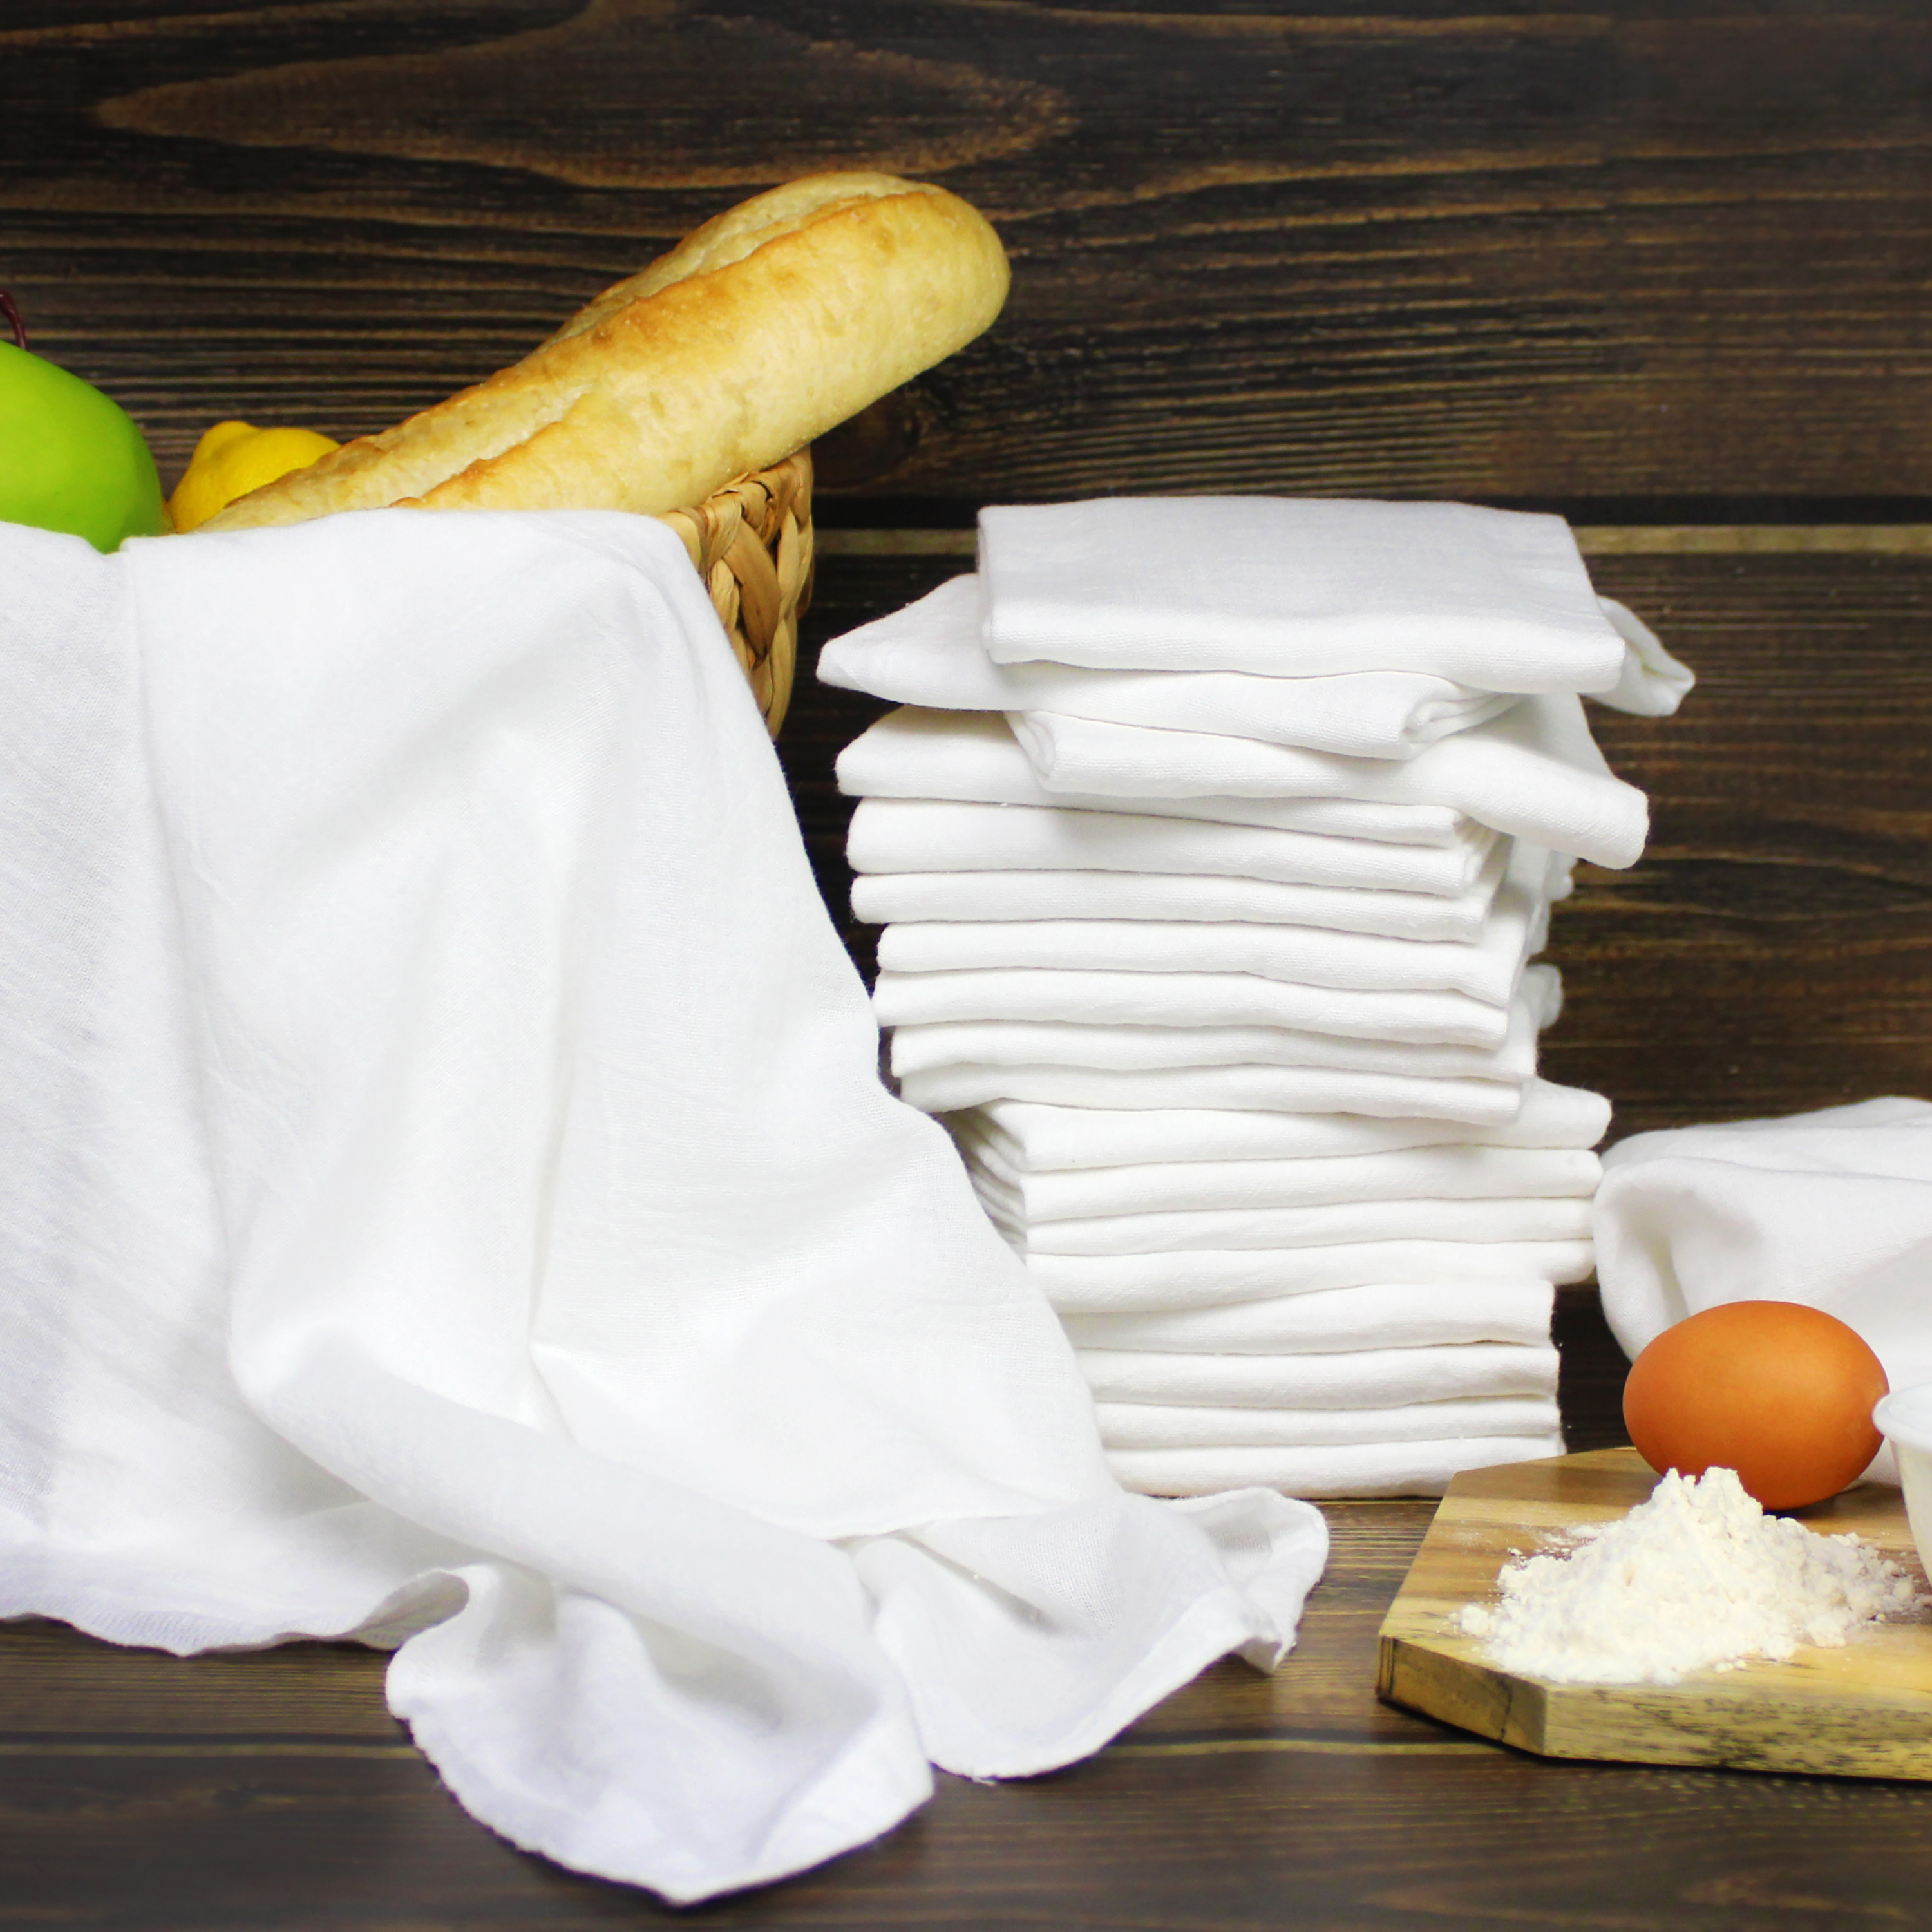 Kitchen Decor Housewarming Gift Flour Sack Towel Banana Tea Towel Kitchen Towel Wedding Gift Dish Towel Wedding Favor